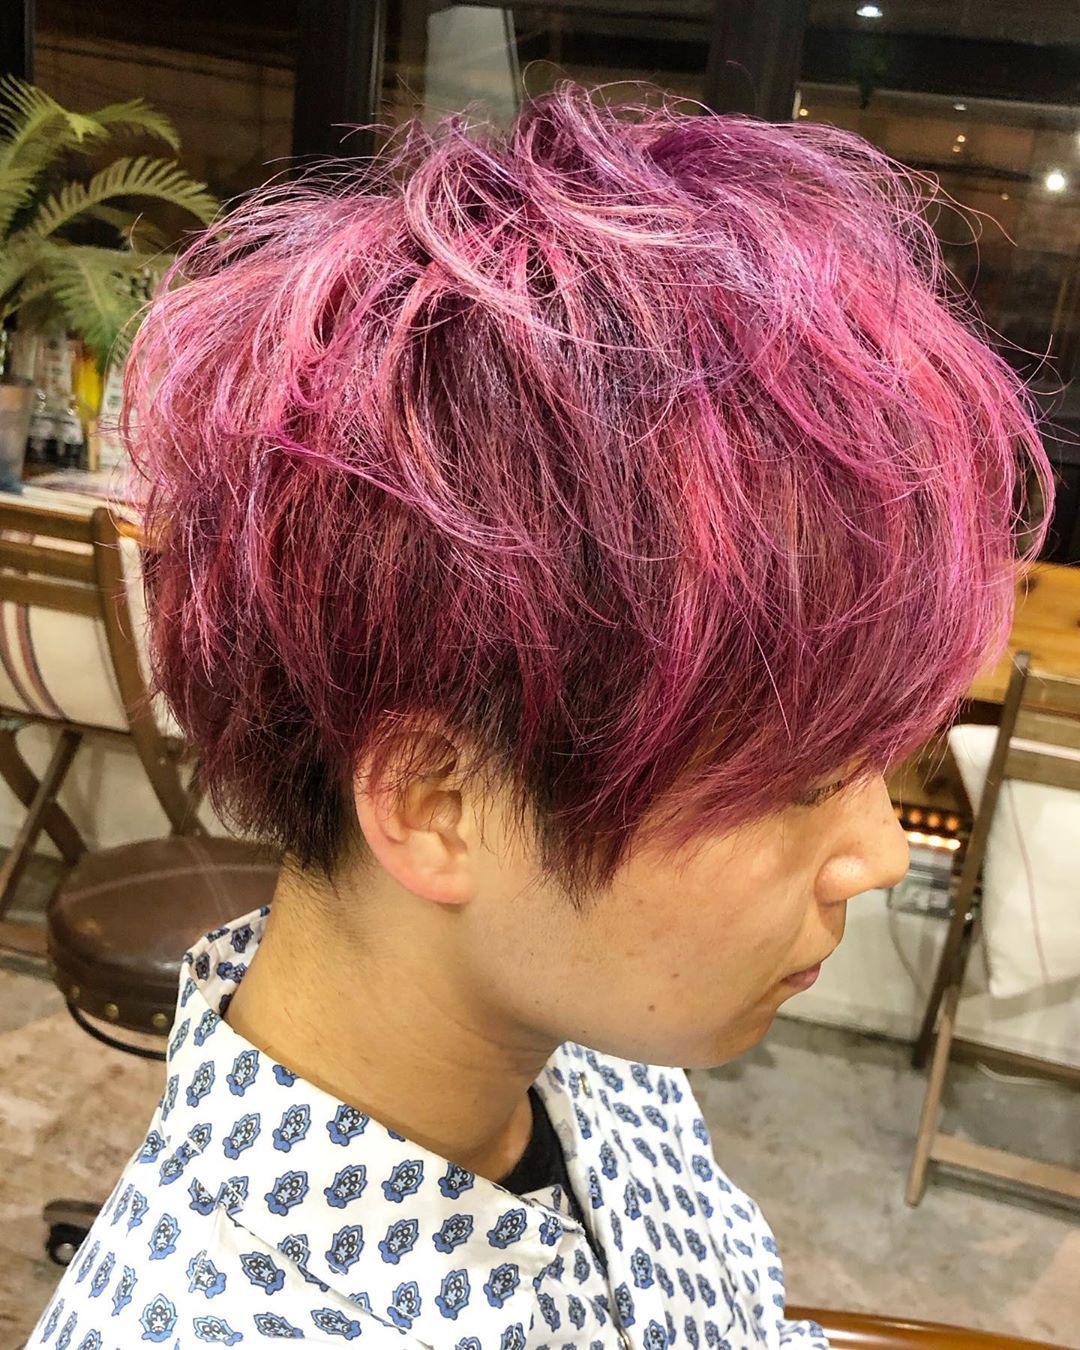 Hair Designer Ikedai 深いバイオレットのベースにピンクのメッシュをオン